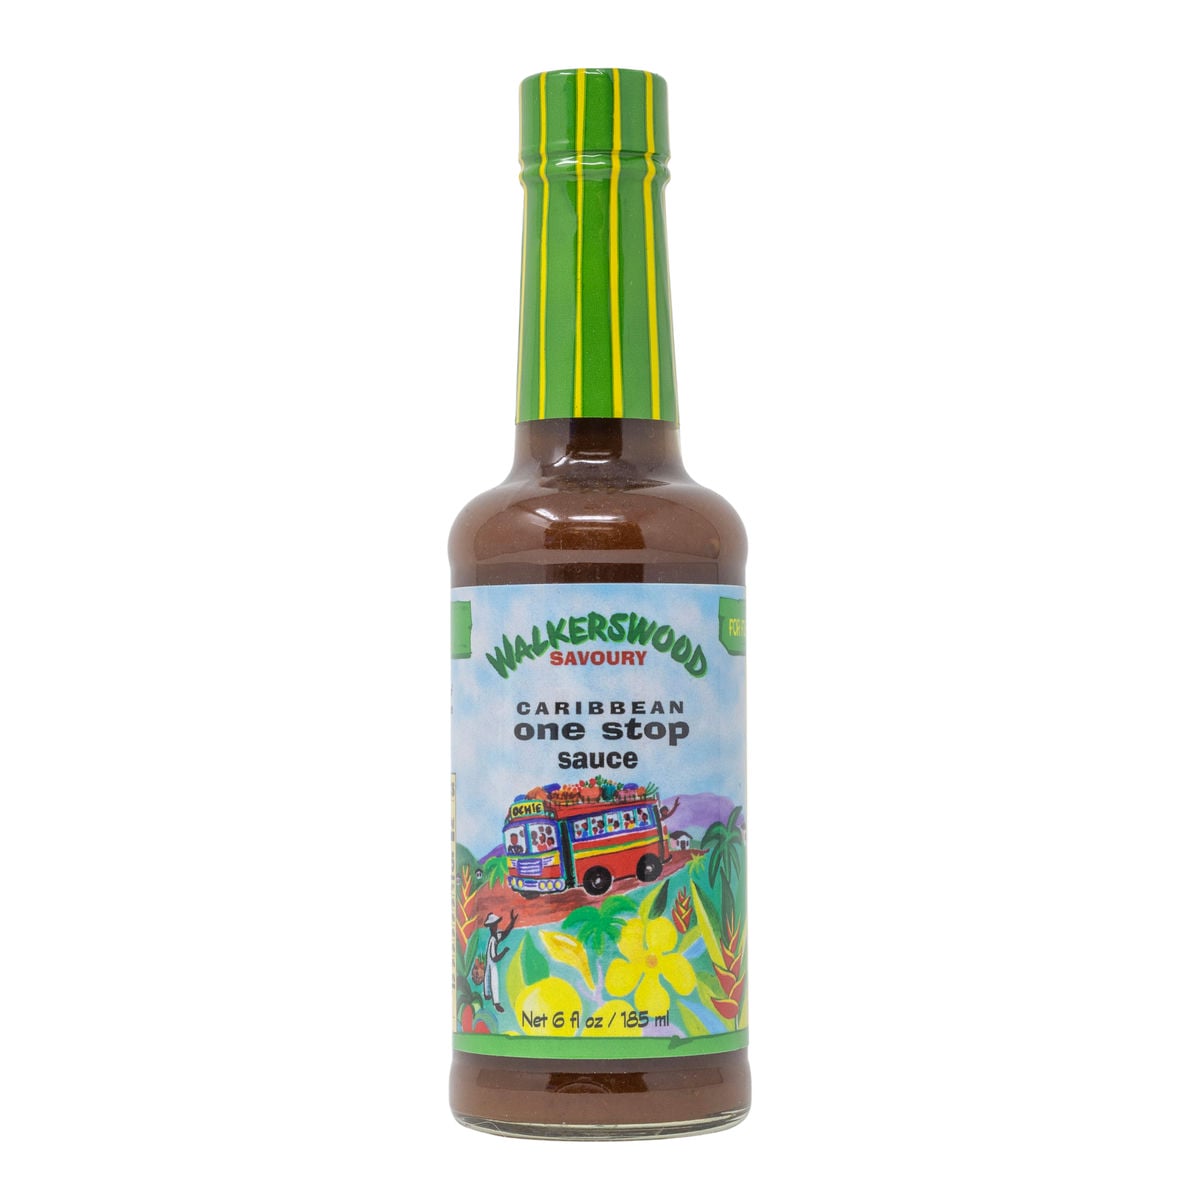 Walkerswood Jamaican One Stop Hot Sauce